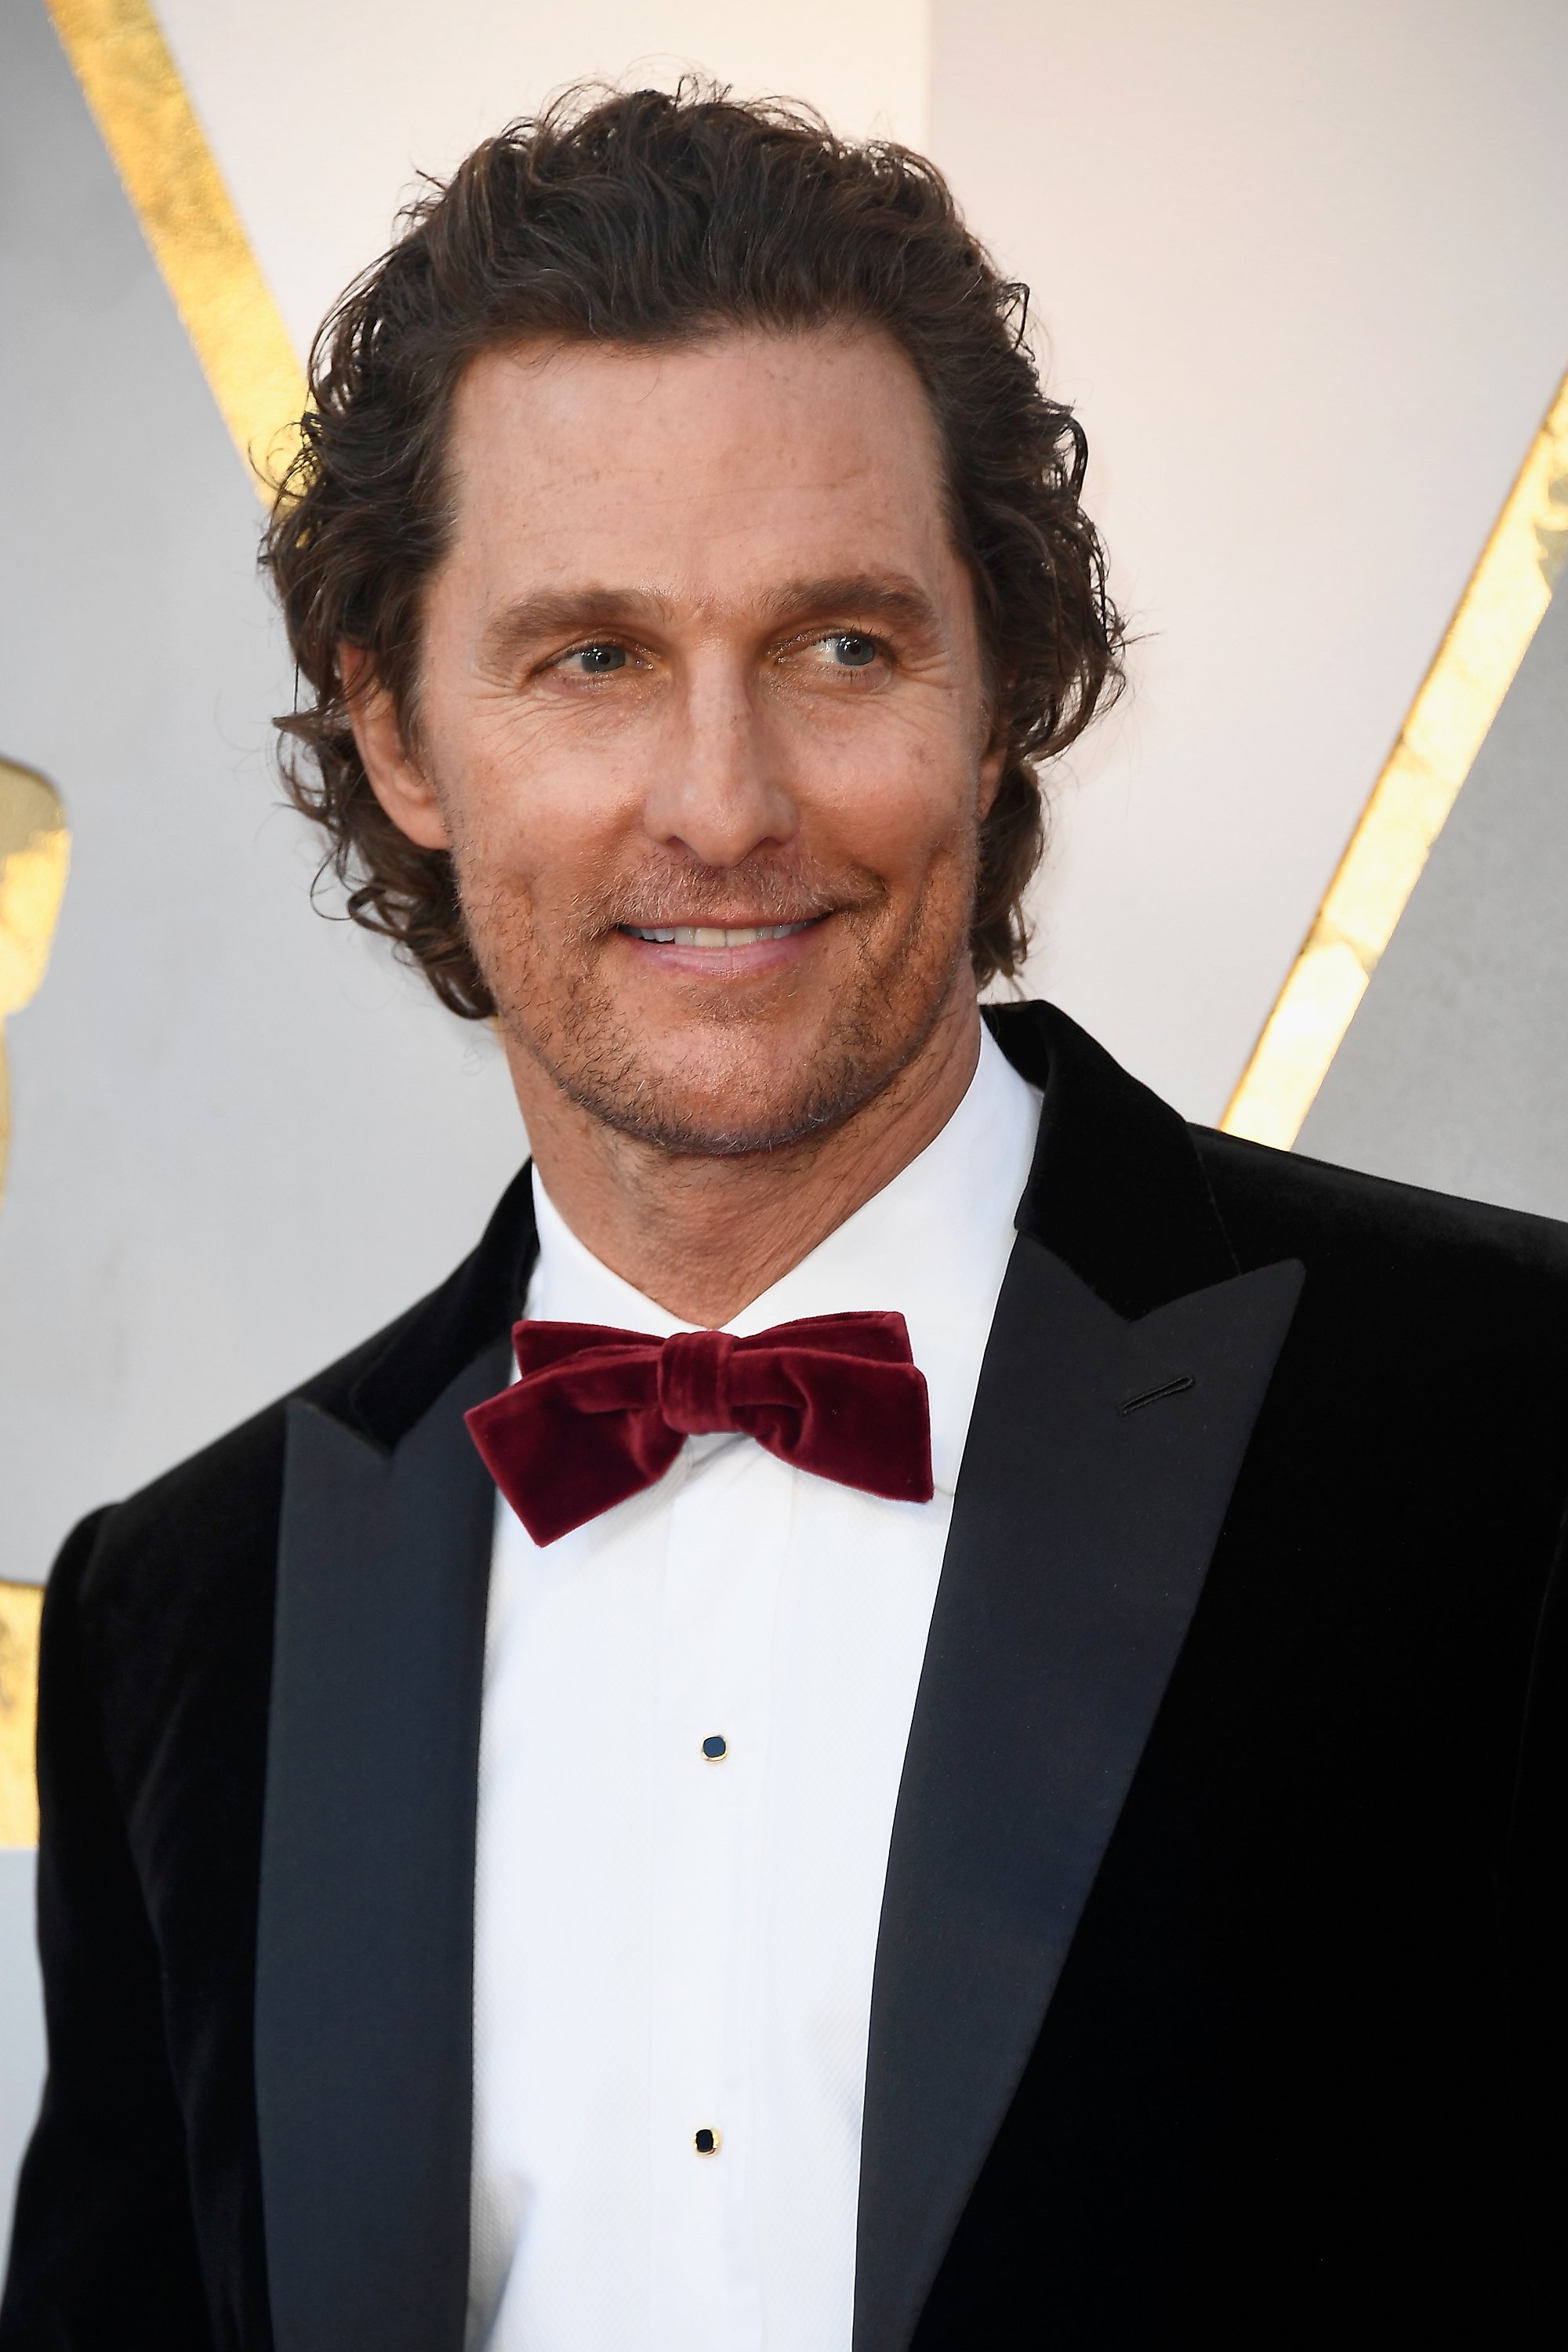 Matthew McConaughey nimmt am 4. März 2018 an den 90. jährlichen Oscar-Verleihungen im Hollywood & Highland Center in Hollywood, Kalifornien, teil. | Quelle: Getty Images